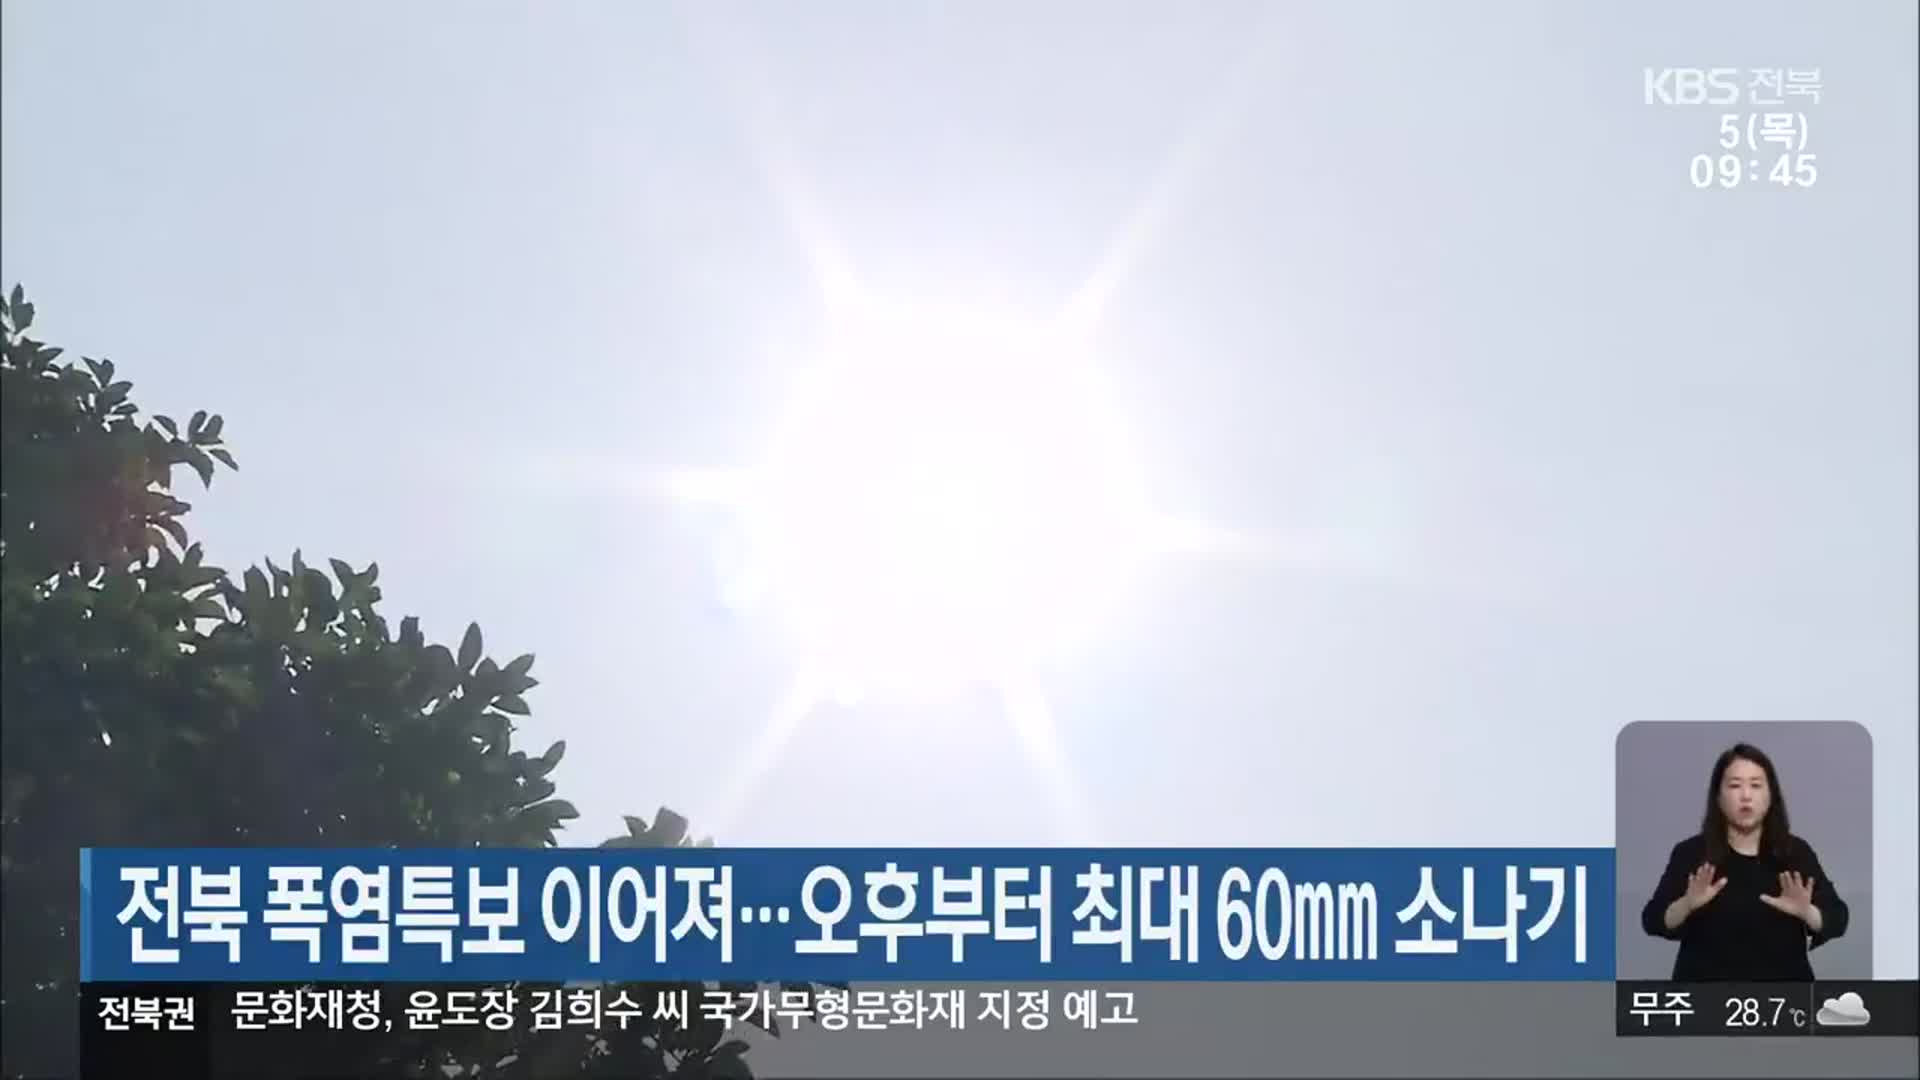 전북 폭염특보 이어져…오후부터 최대 60㎜ 소나기